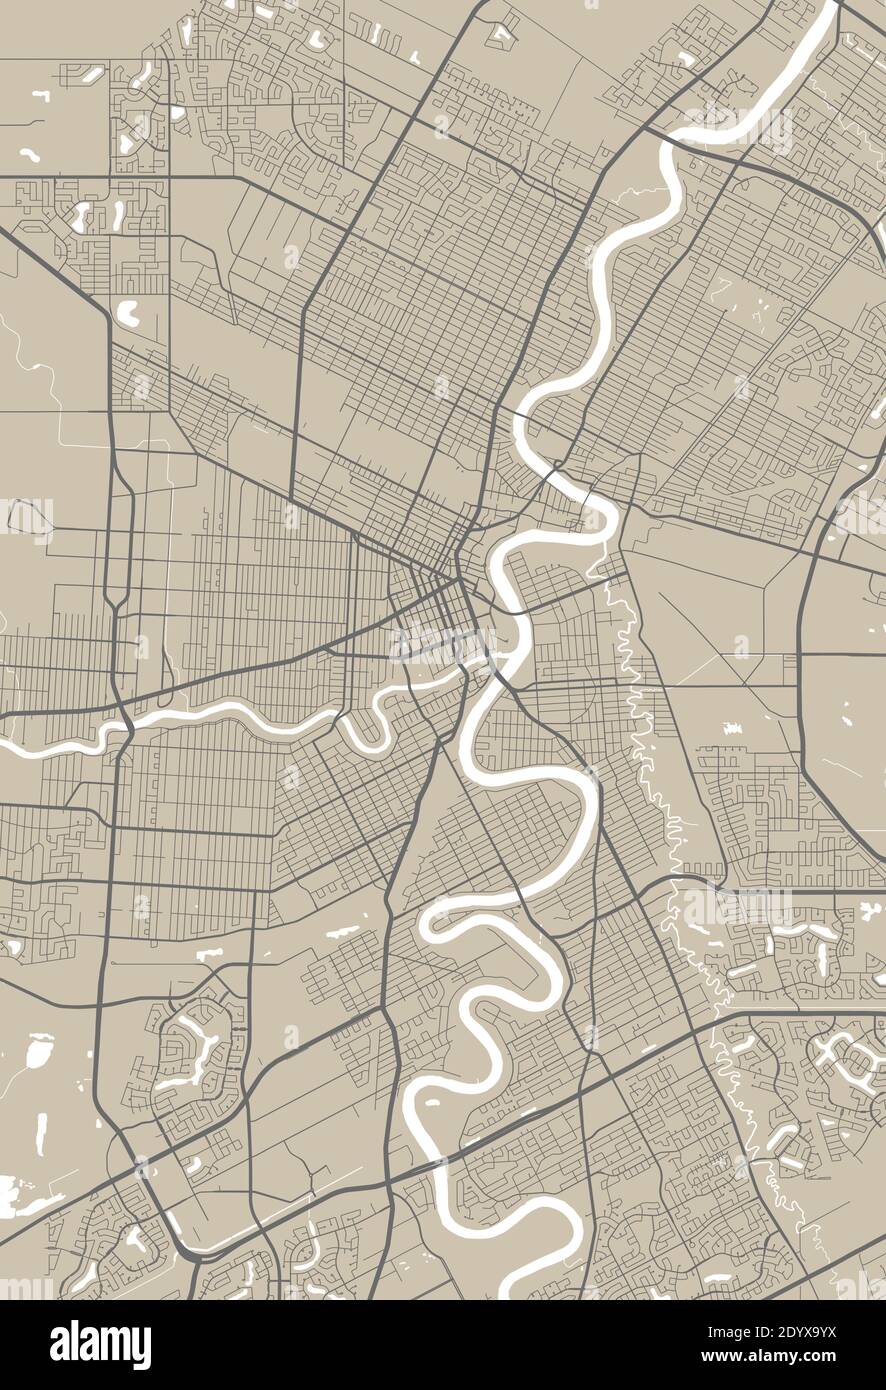 Carte détaillée de la zone administrative de Winnipeg. Illustration vectorielle libre de droits. Panorama urbain. Illustration de Vecteur